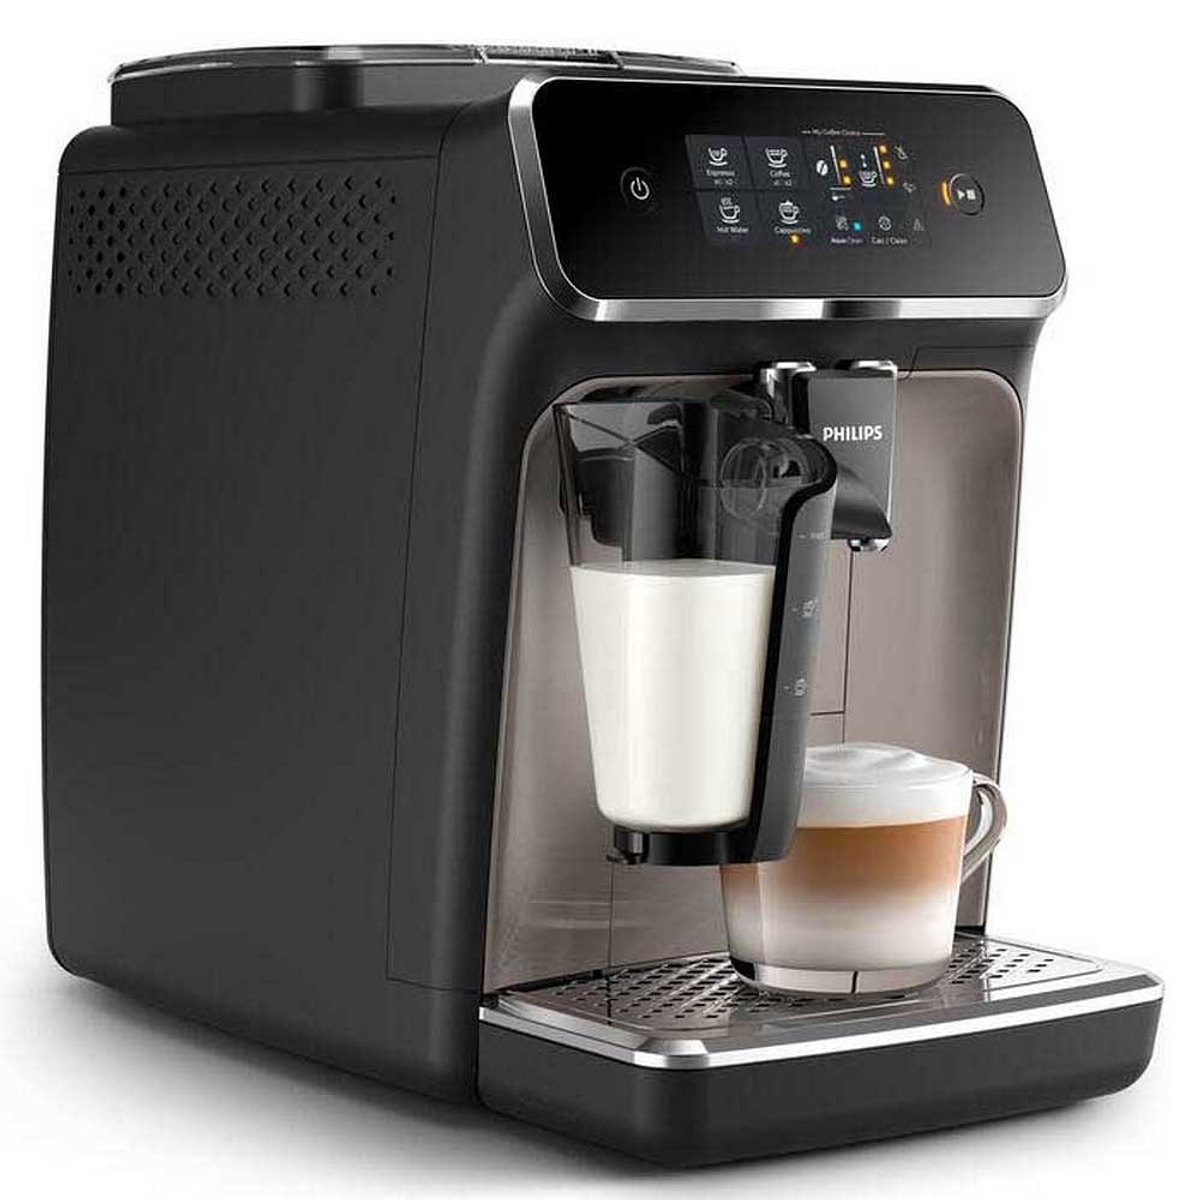 Philips EP2235/40 Super automatic espresso machine